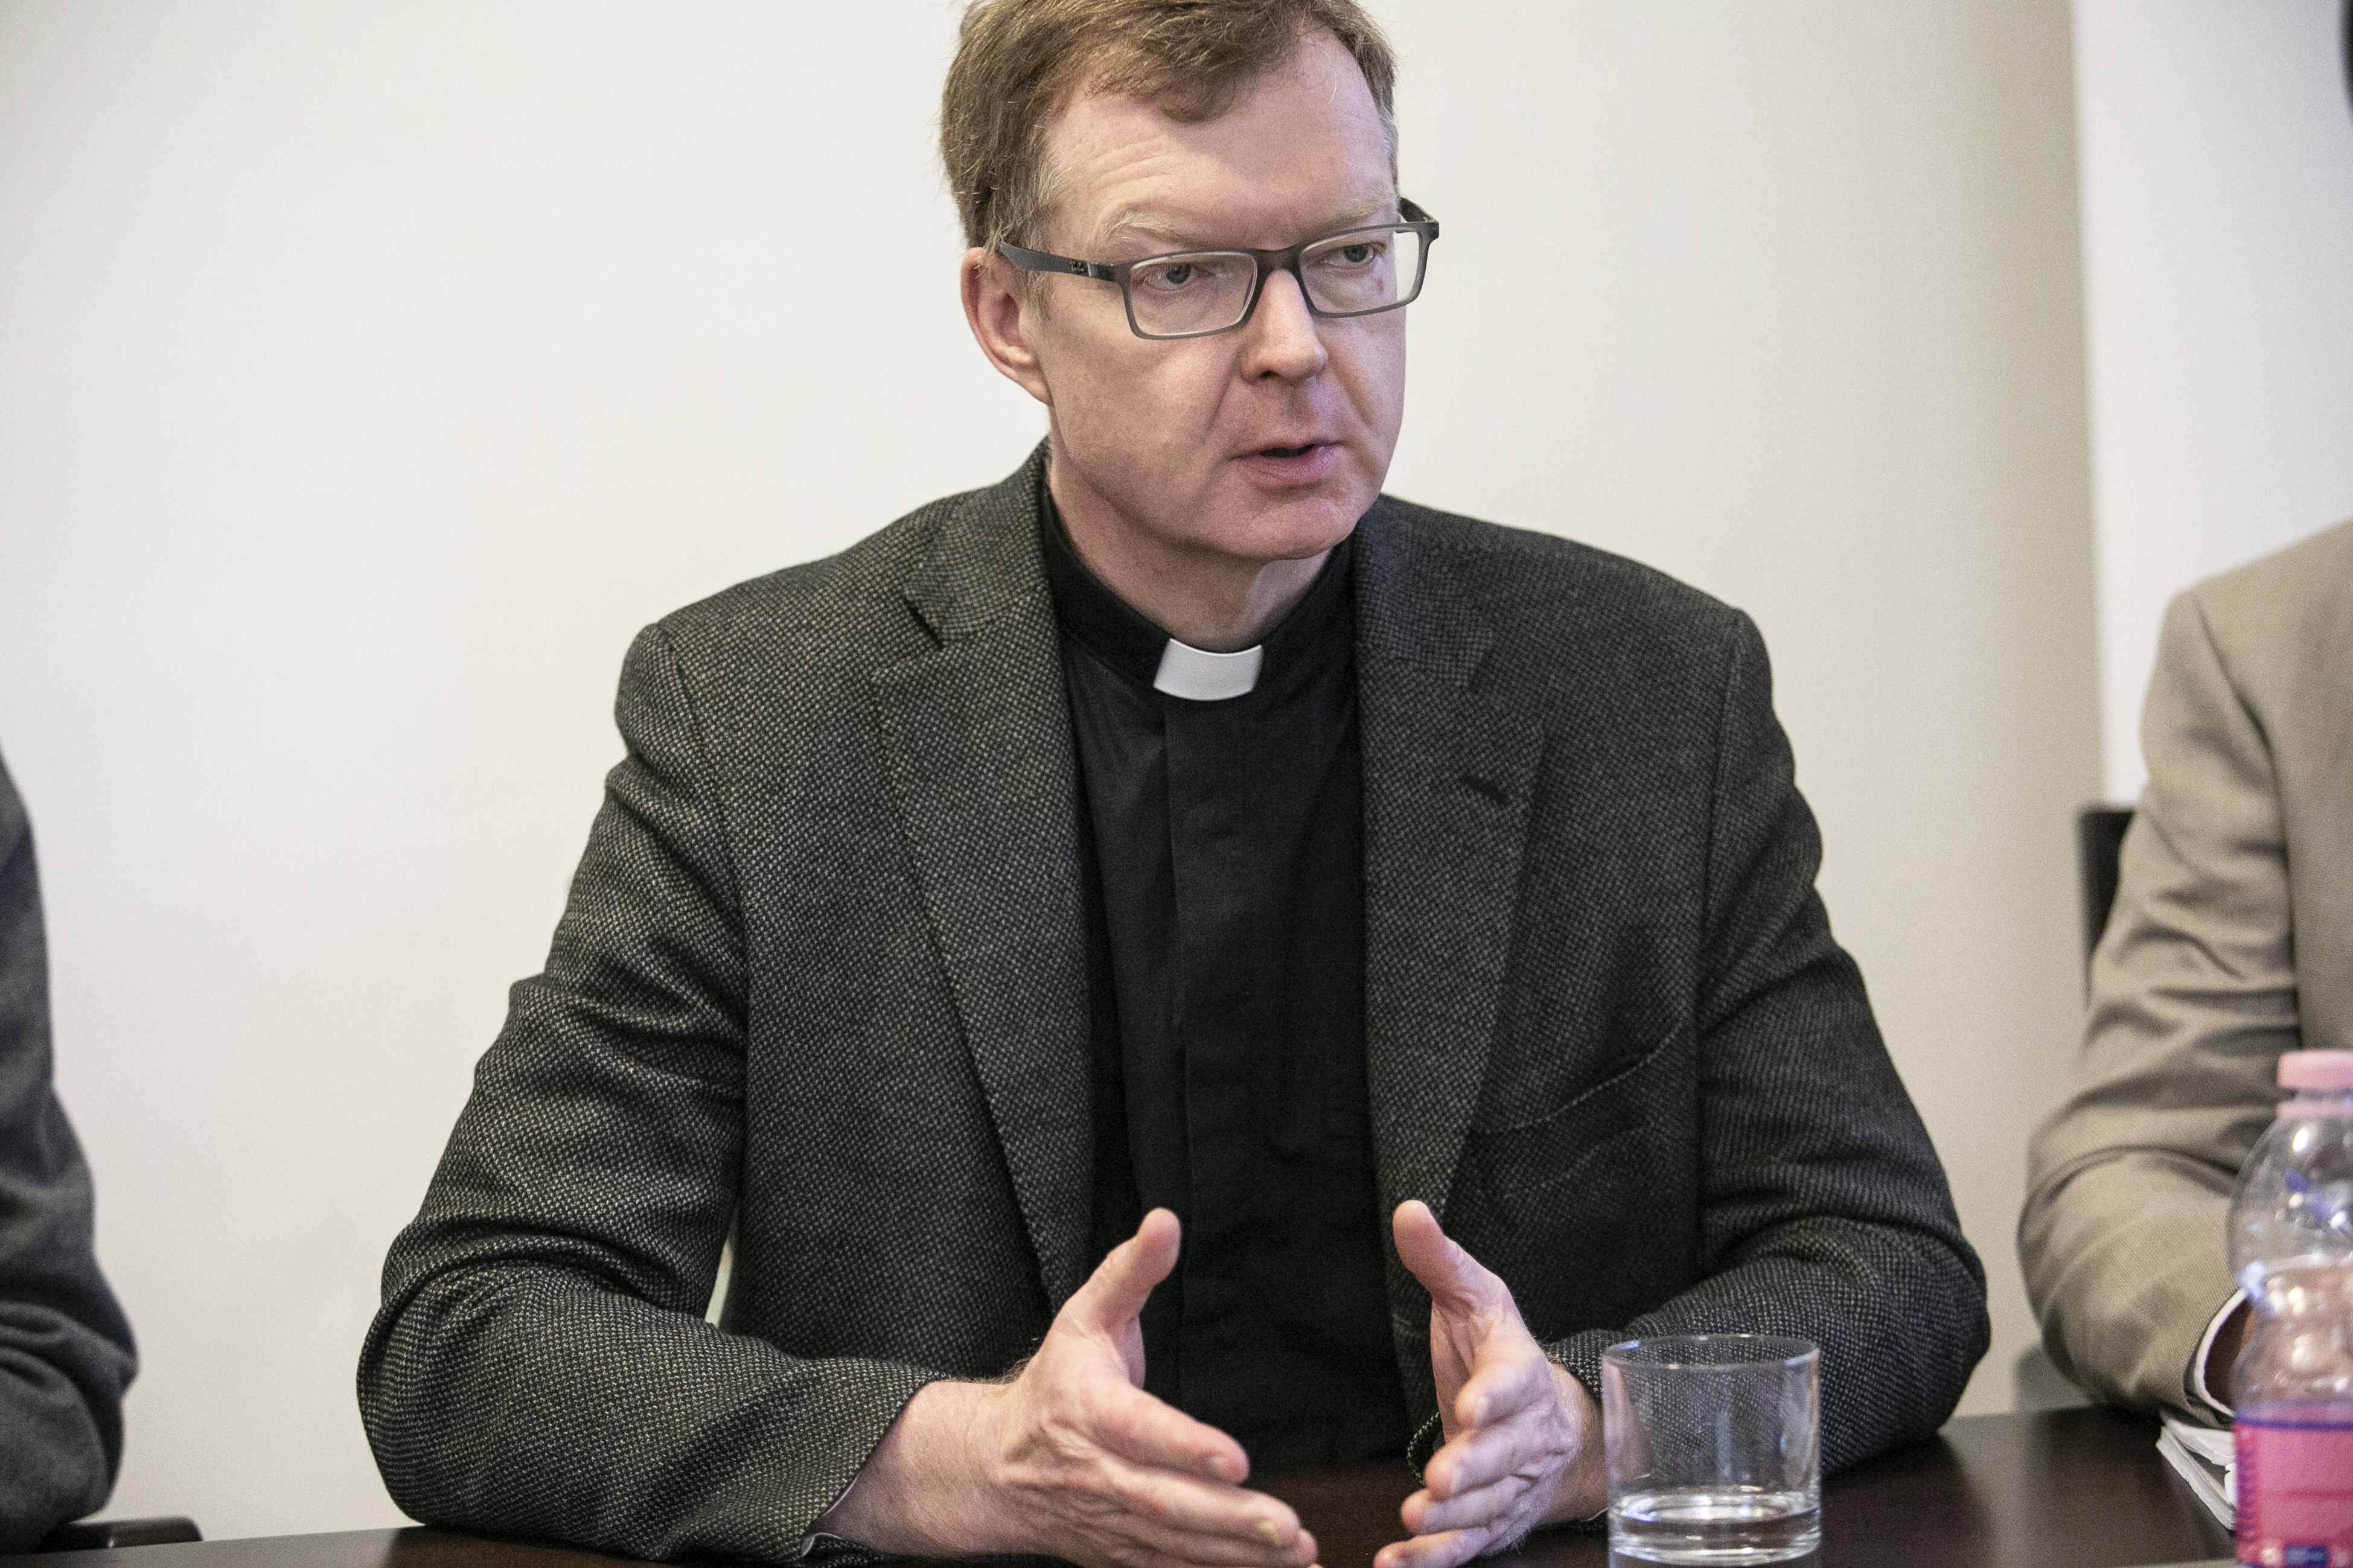 Lemondott Hans Zollner, az egyházban elkövetett molesztálásokat vizsgáló Pápai Gyermekvédelmi Bizottság  egyik legfontosabb tagja